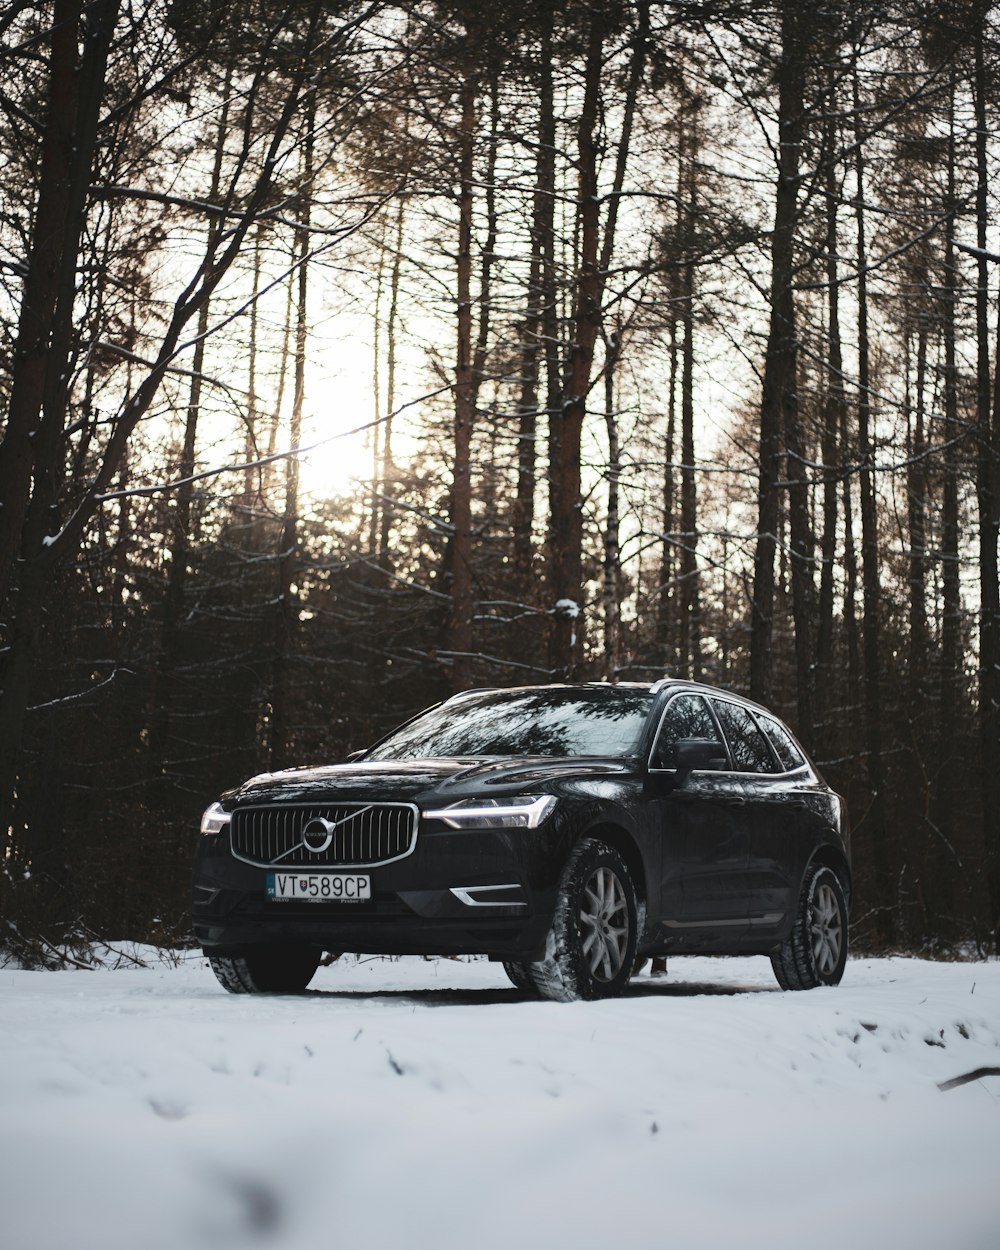 Une voiture Volvo est garée dans la neige